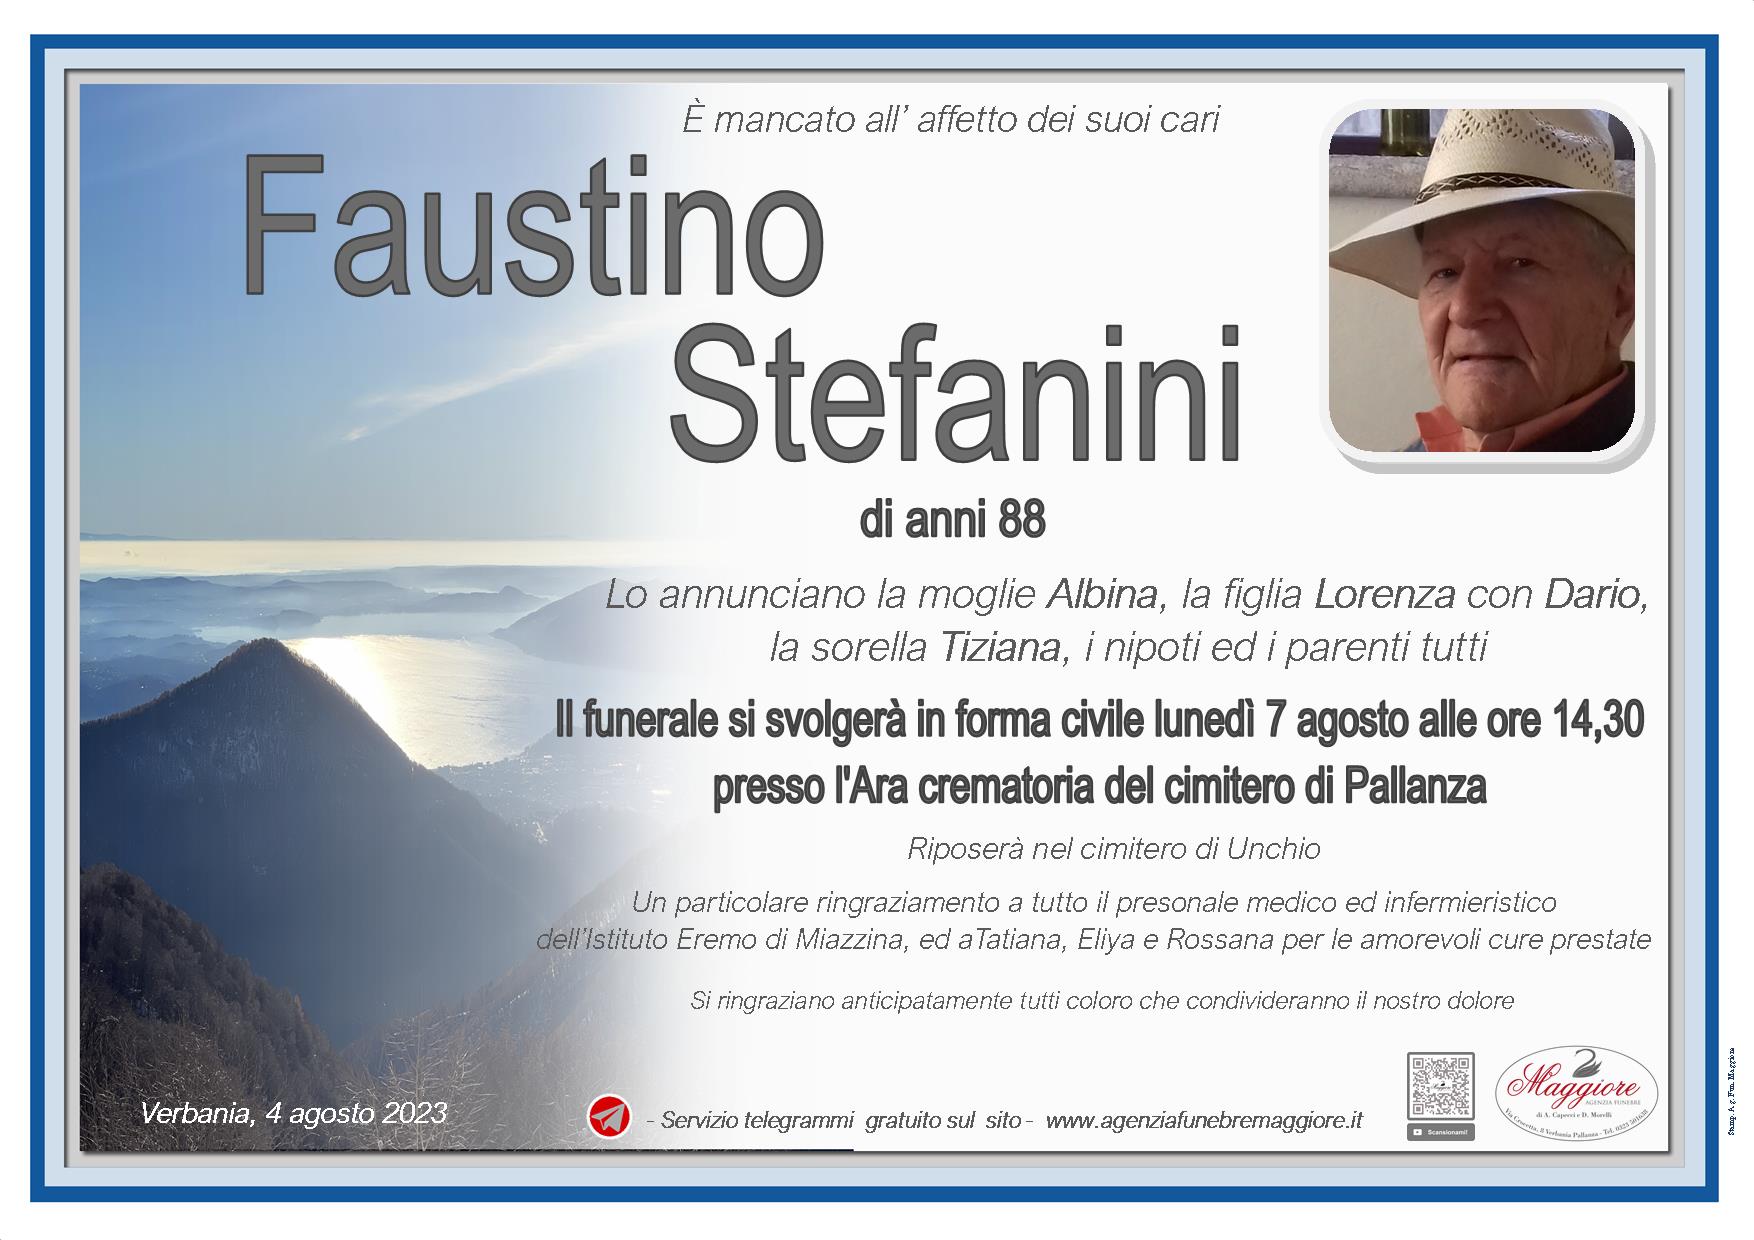 Faustino Stefanini